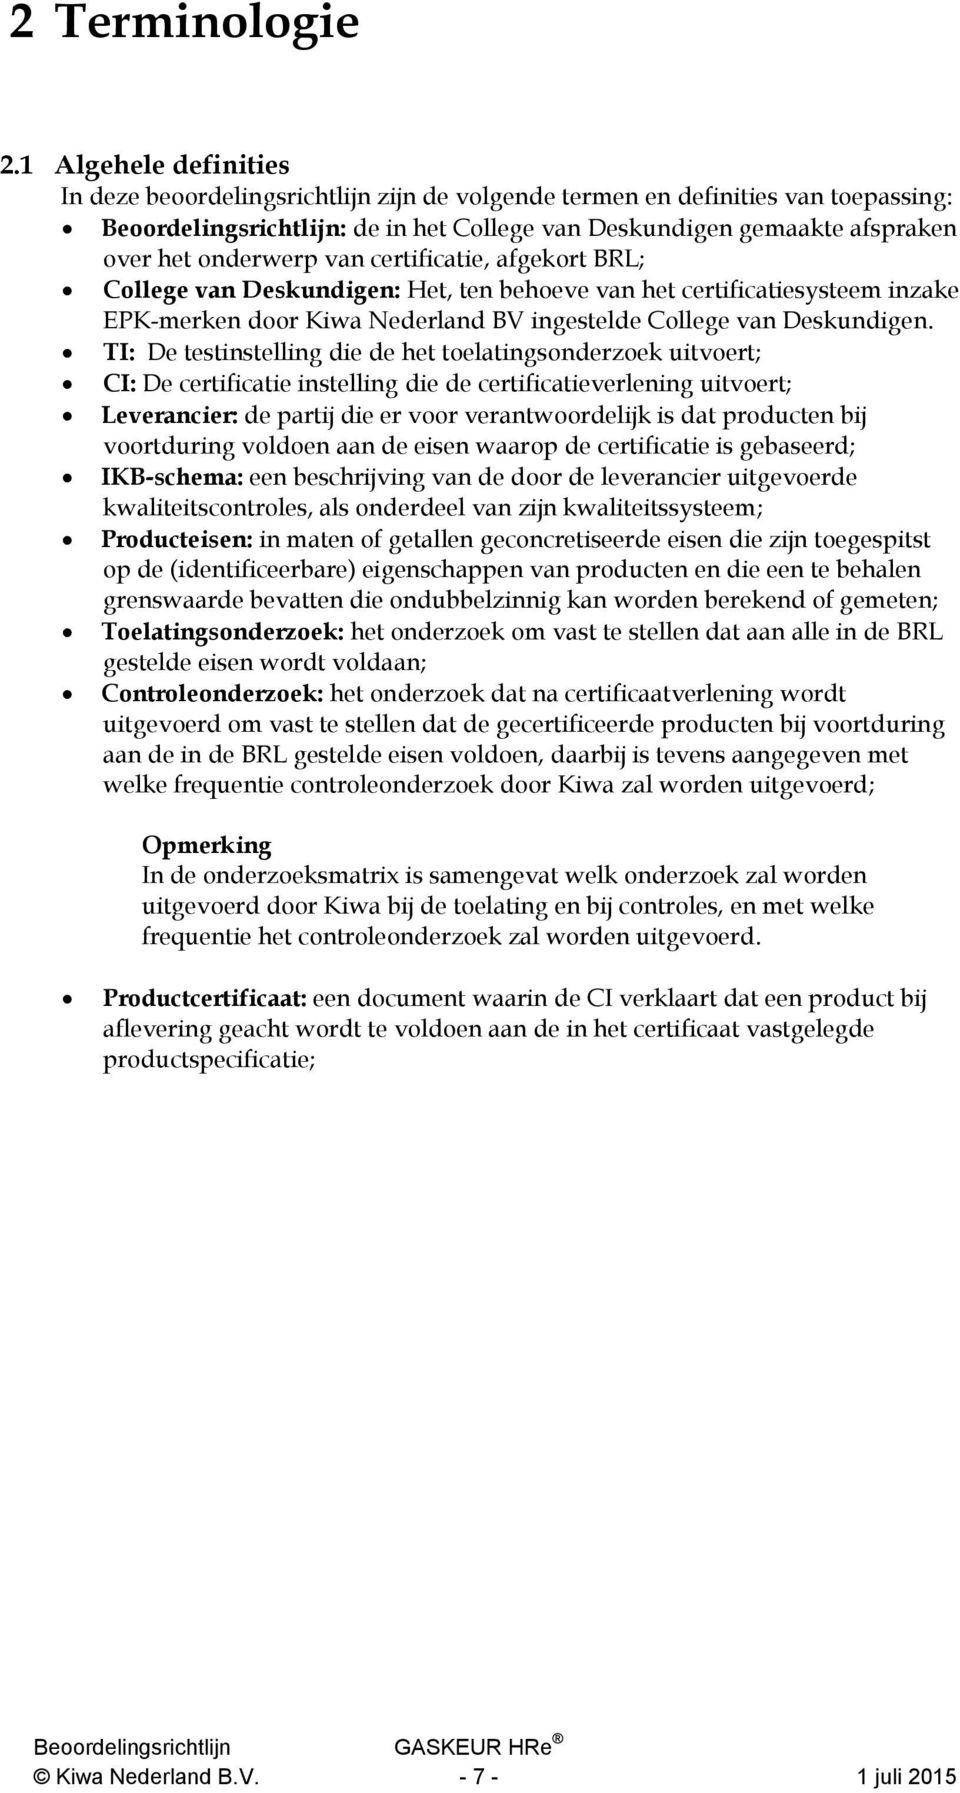 onderwerp van certificatie, afgekort BRL; College van Deskundigen: Het, ten behoeve van het certificatiesysteem inzake EPK-merken door Kiwa Nederland BV ingestelde College van Deskundigen.